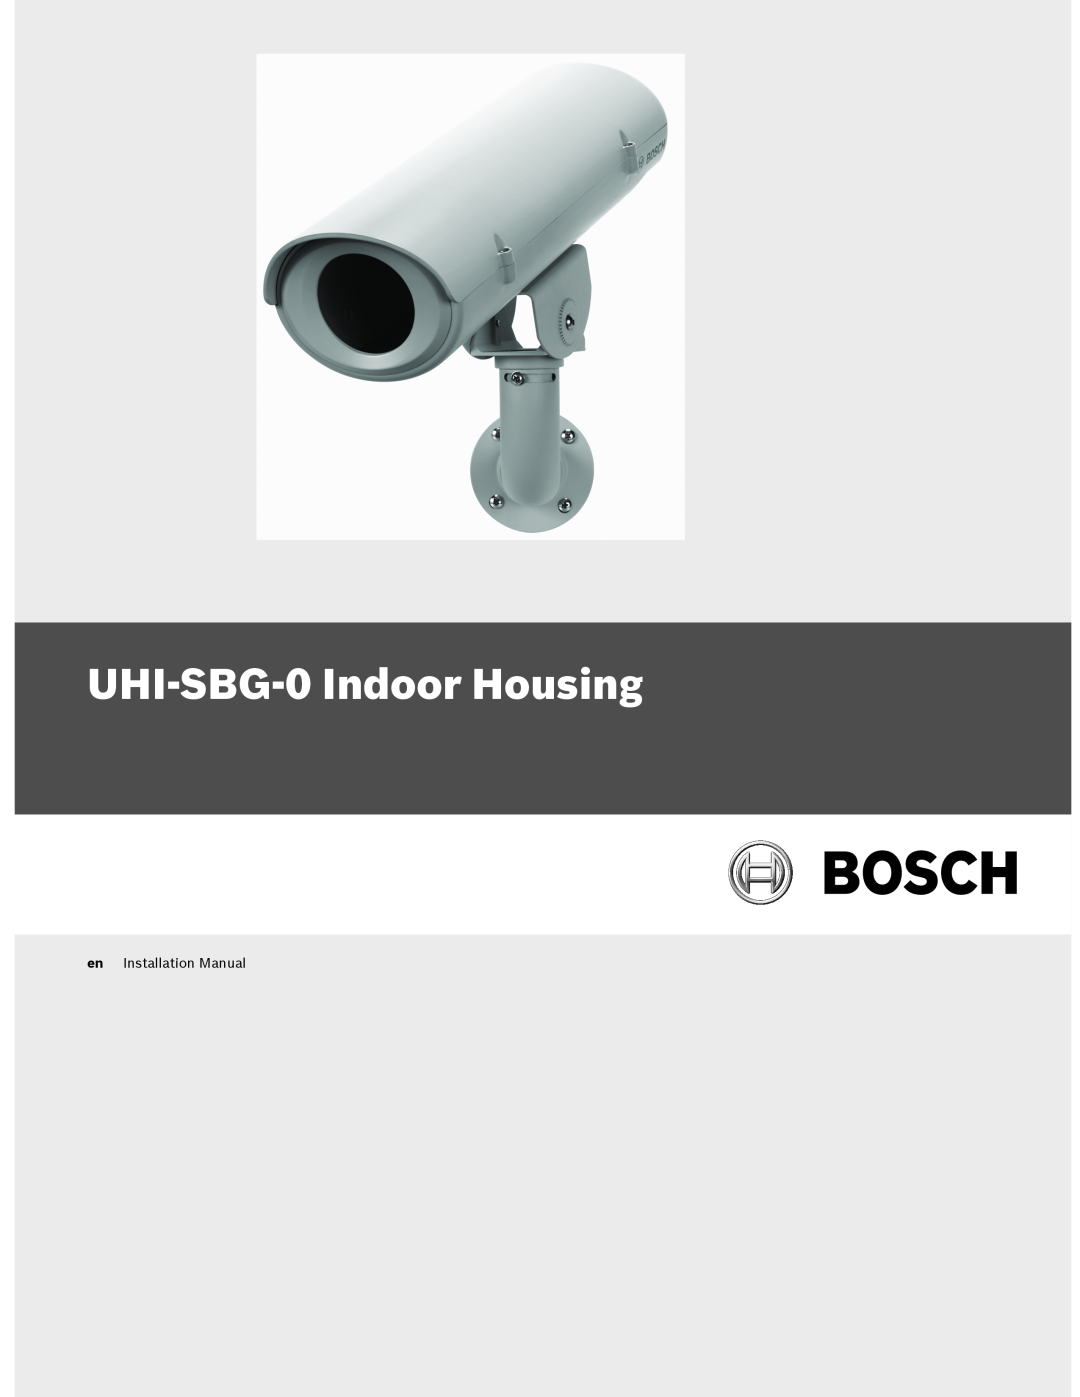 Bosch Appliances installation manual UHI-SBG-0Indoor Housing, en Installation Manual 